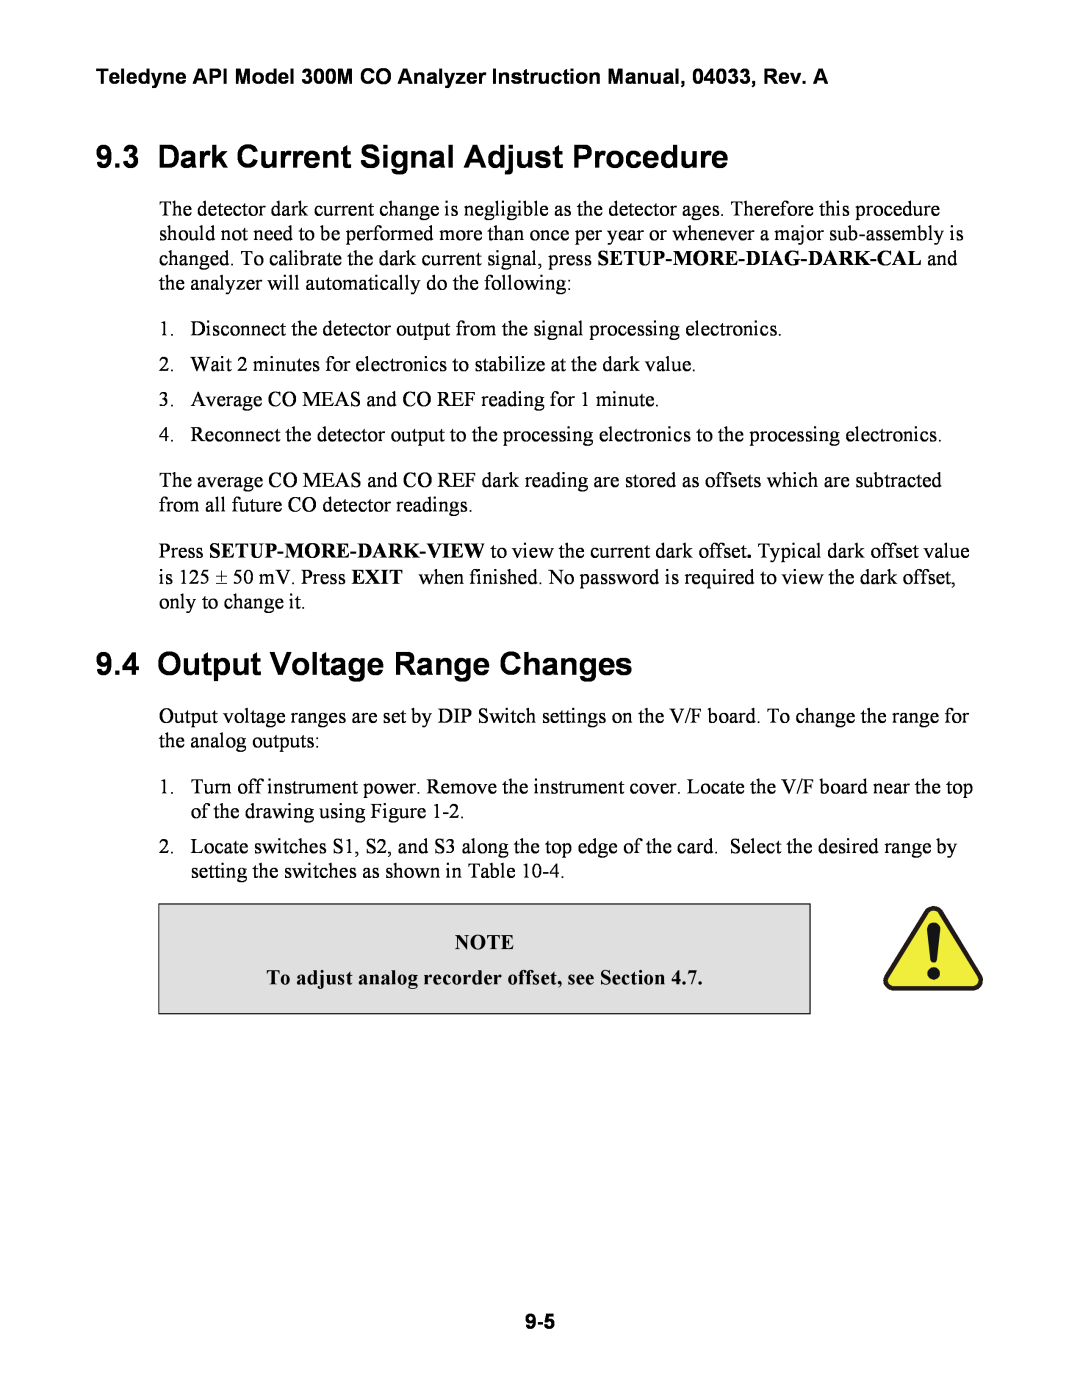 Teledyne 300M instruction manual Dark Current Signal Adjust Procedure, Output Voltage Range Changes 